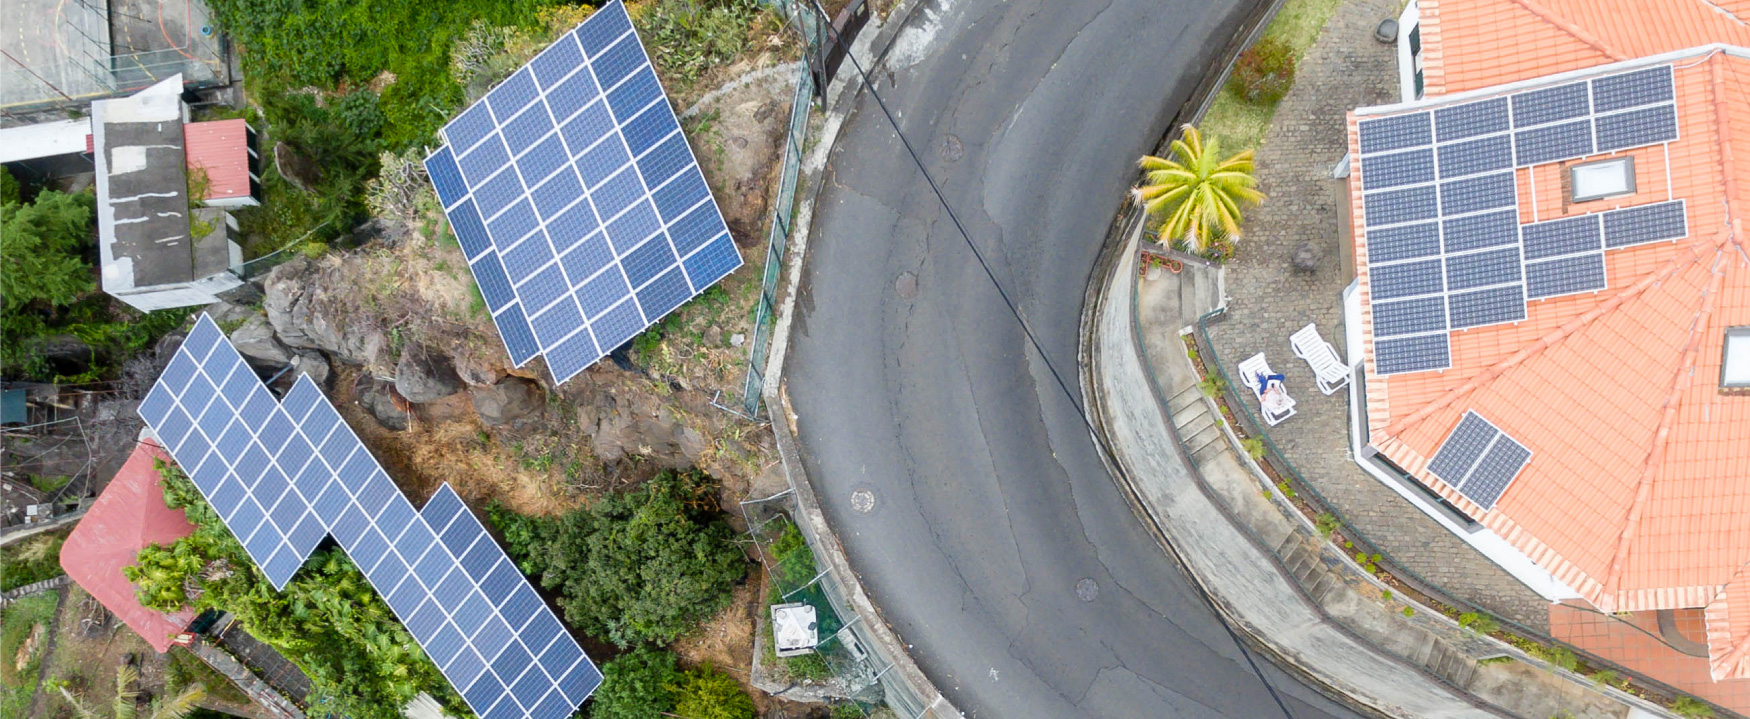 Une photographie aérienne montre des maisons sur une colline tropicale avec des panneaux solaires sur leurs toits.